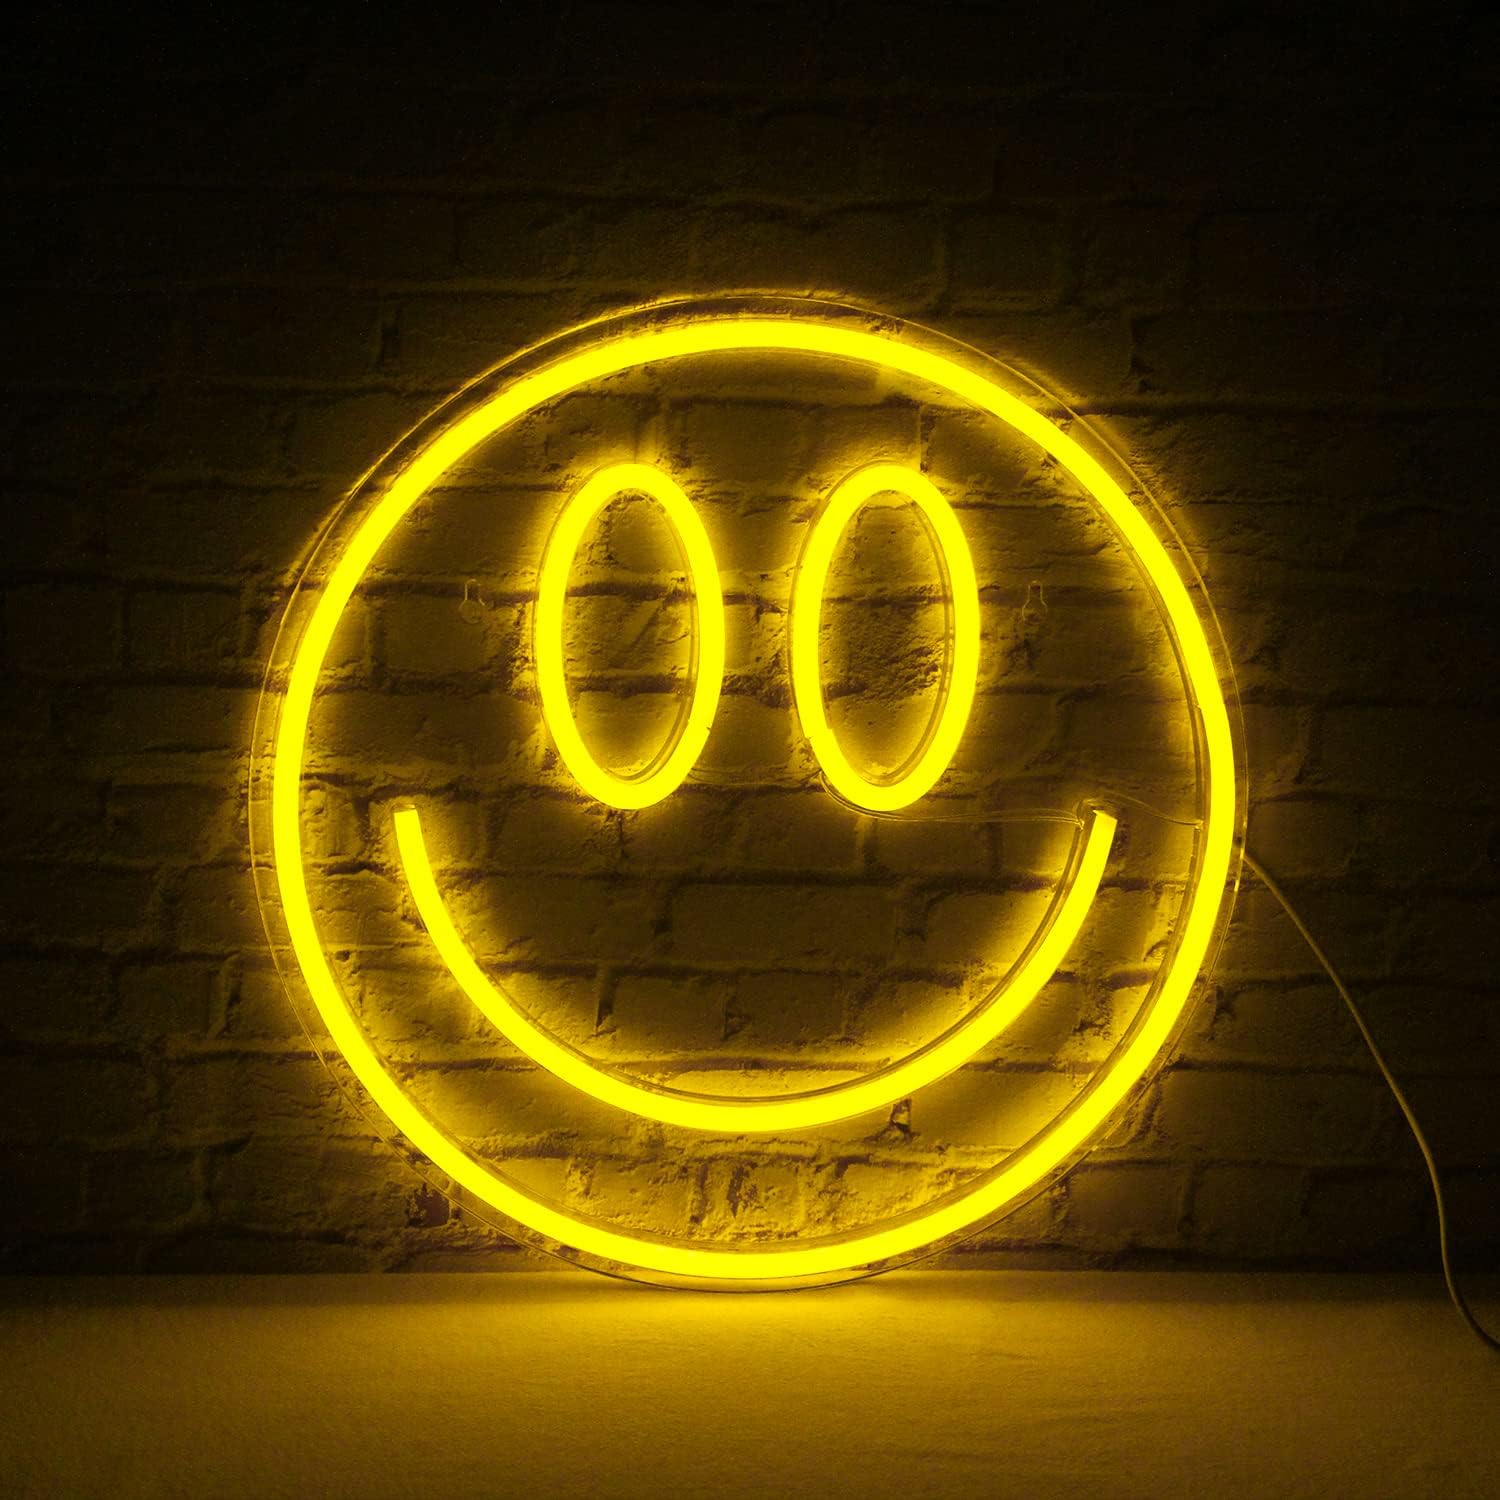 Insegna al neon LED sorridente sul muro